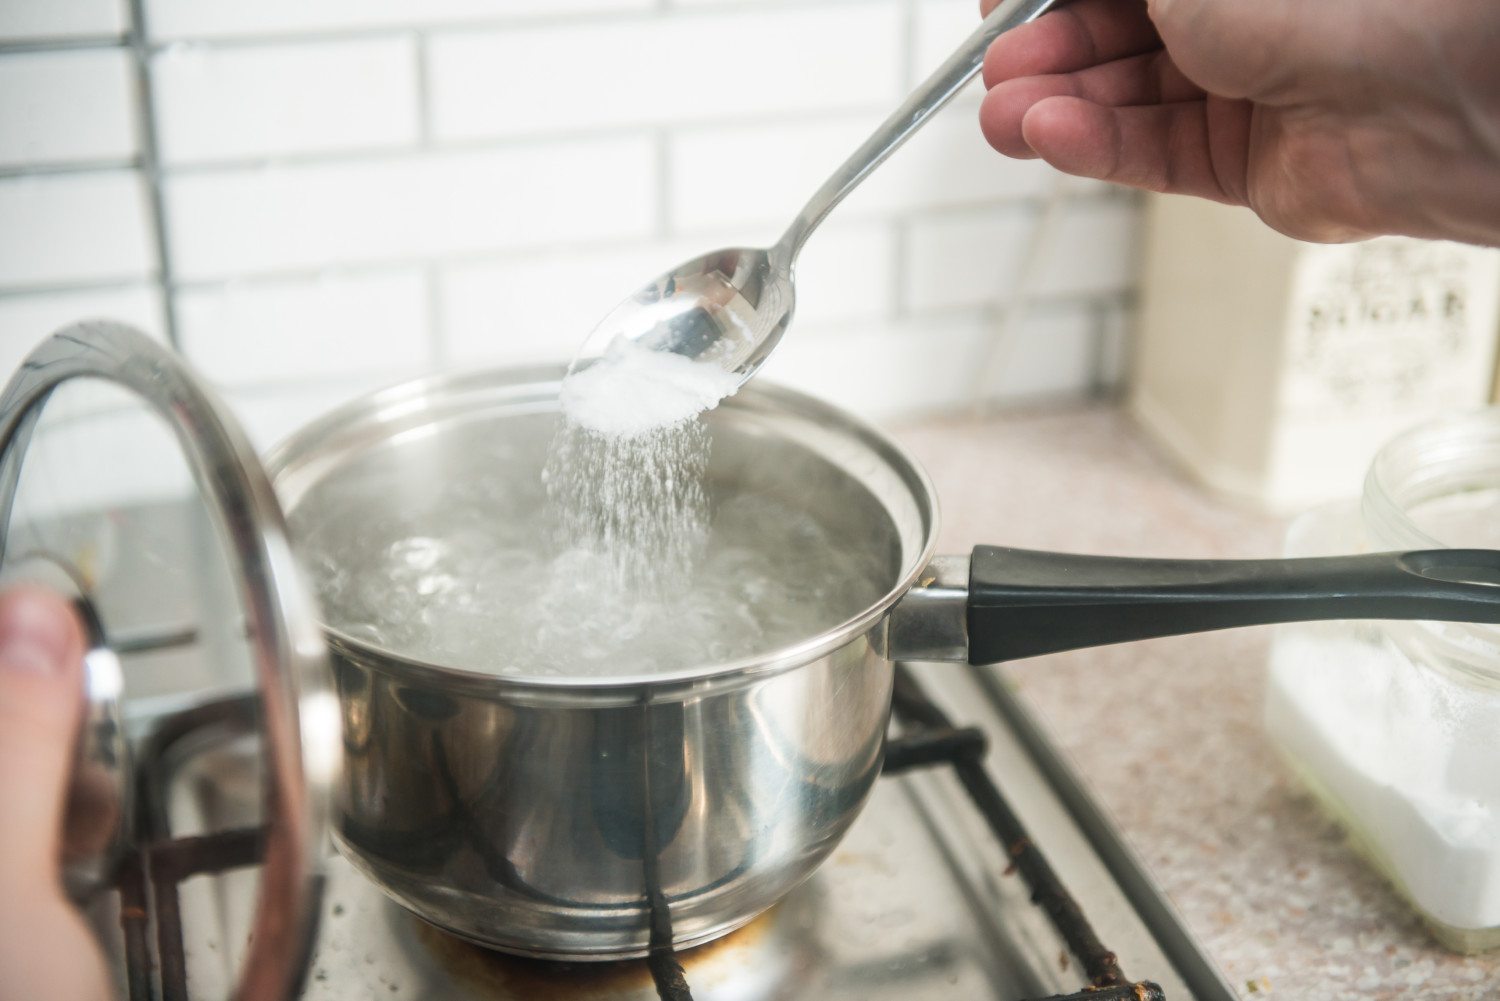 Does salt boil water faster